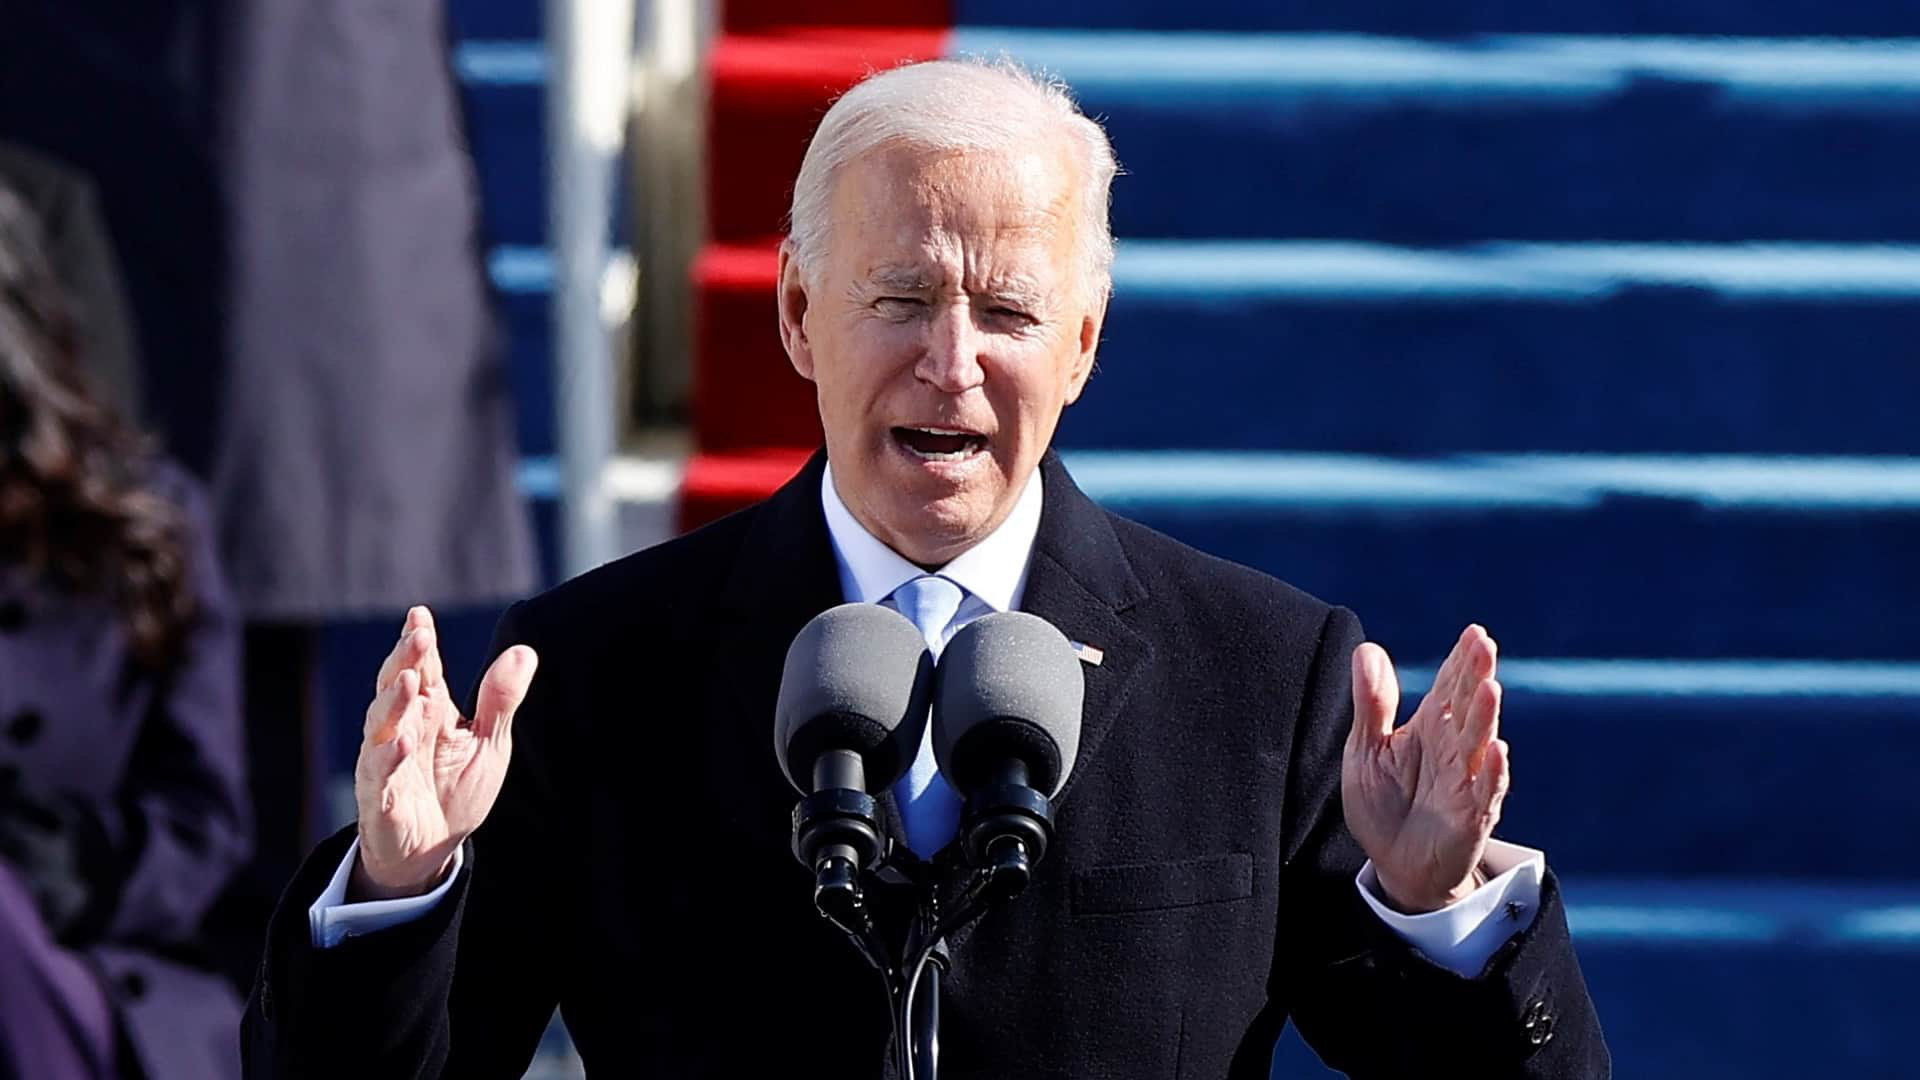 Quan hệ Mỹ - Trung thời Tổng thống Joe Biden: Chính sách cứng, tiếp cận mềm - Ảnh 2.